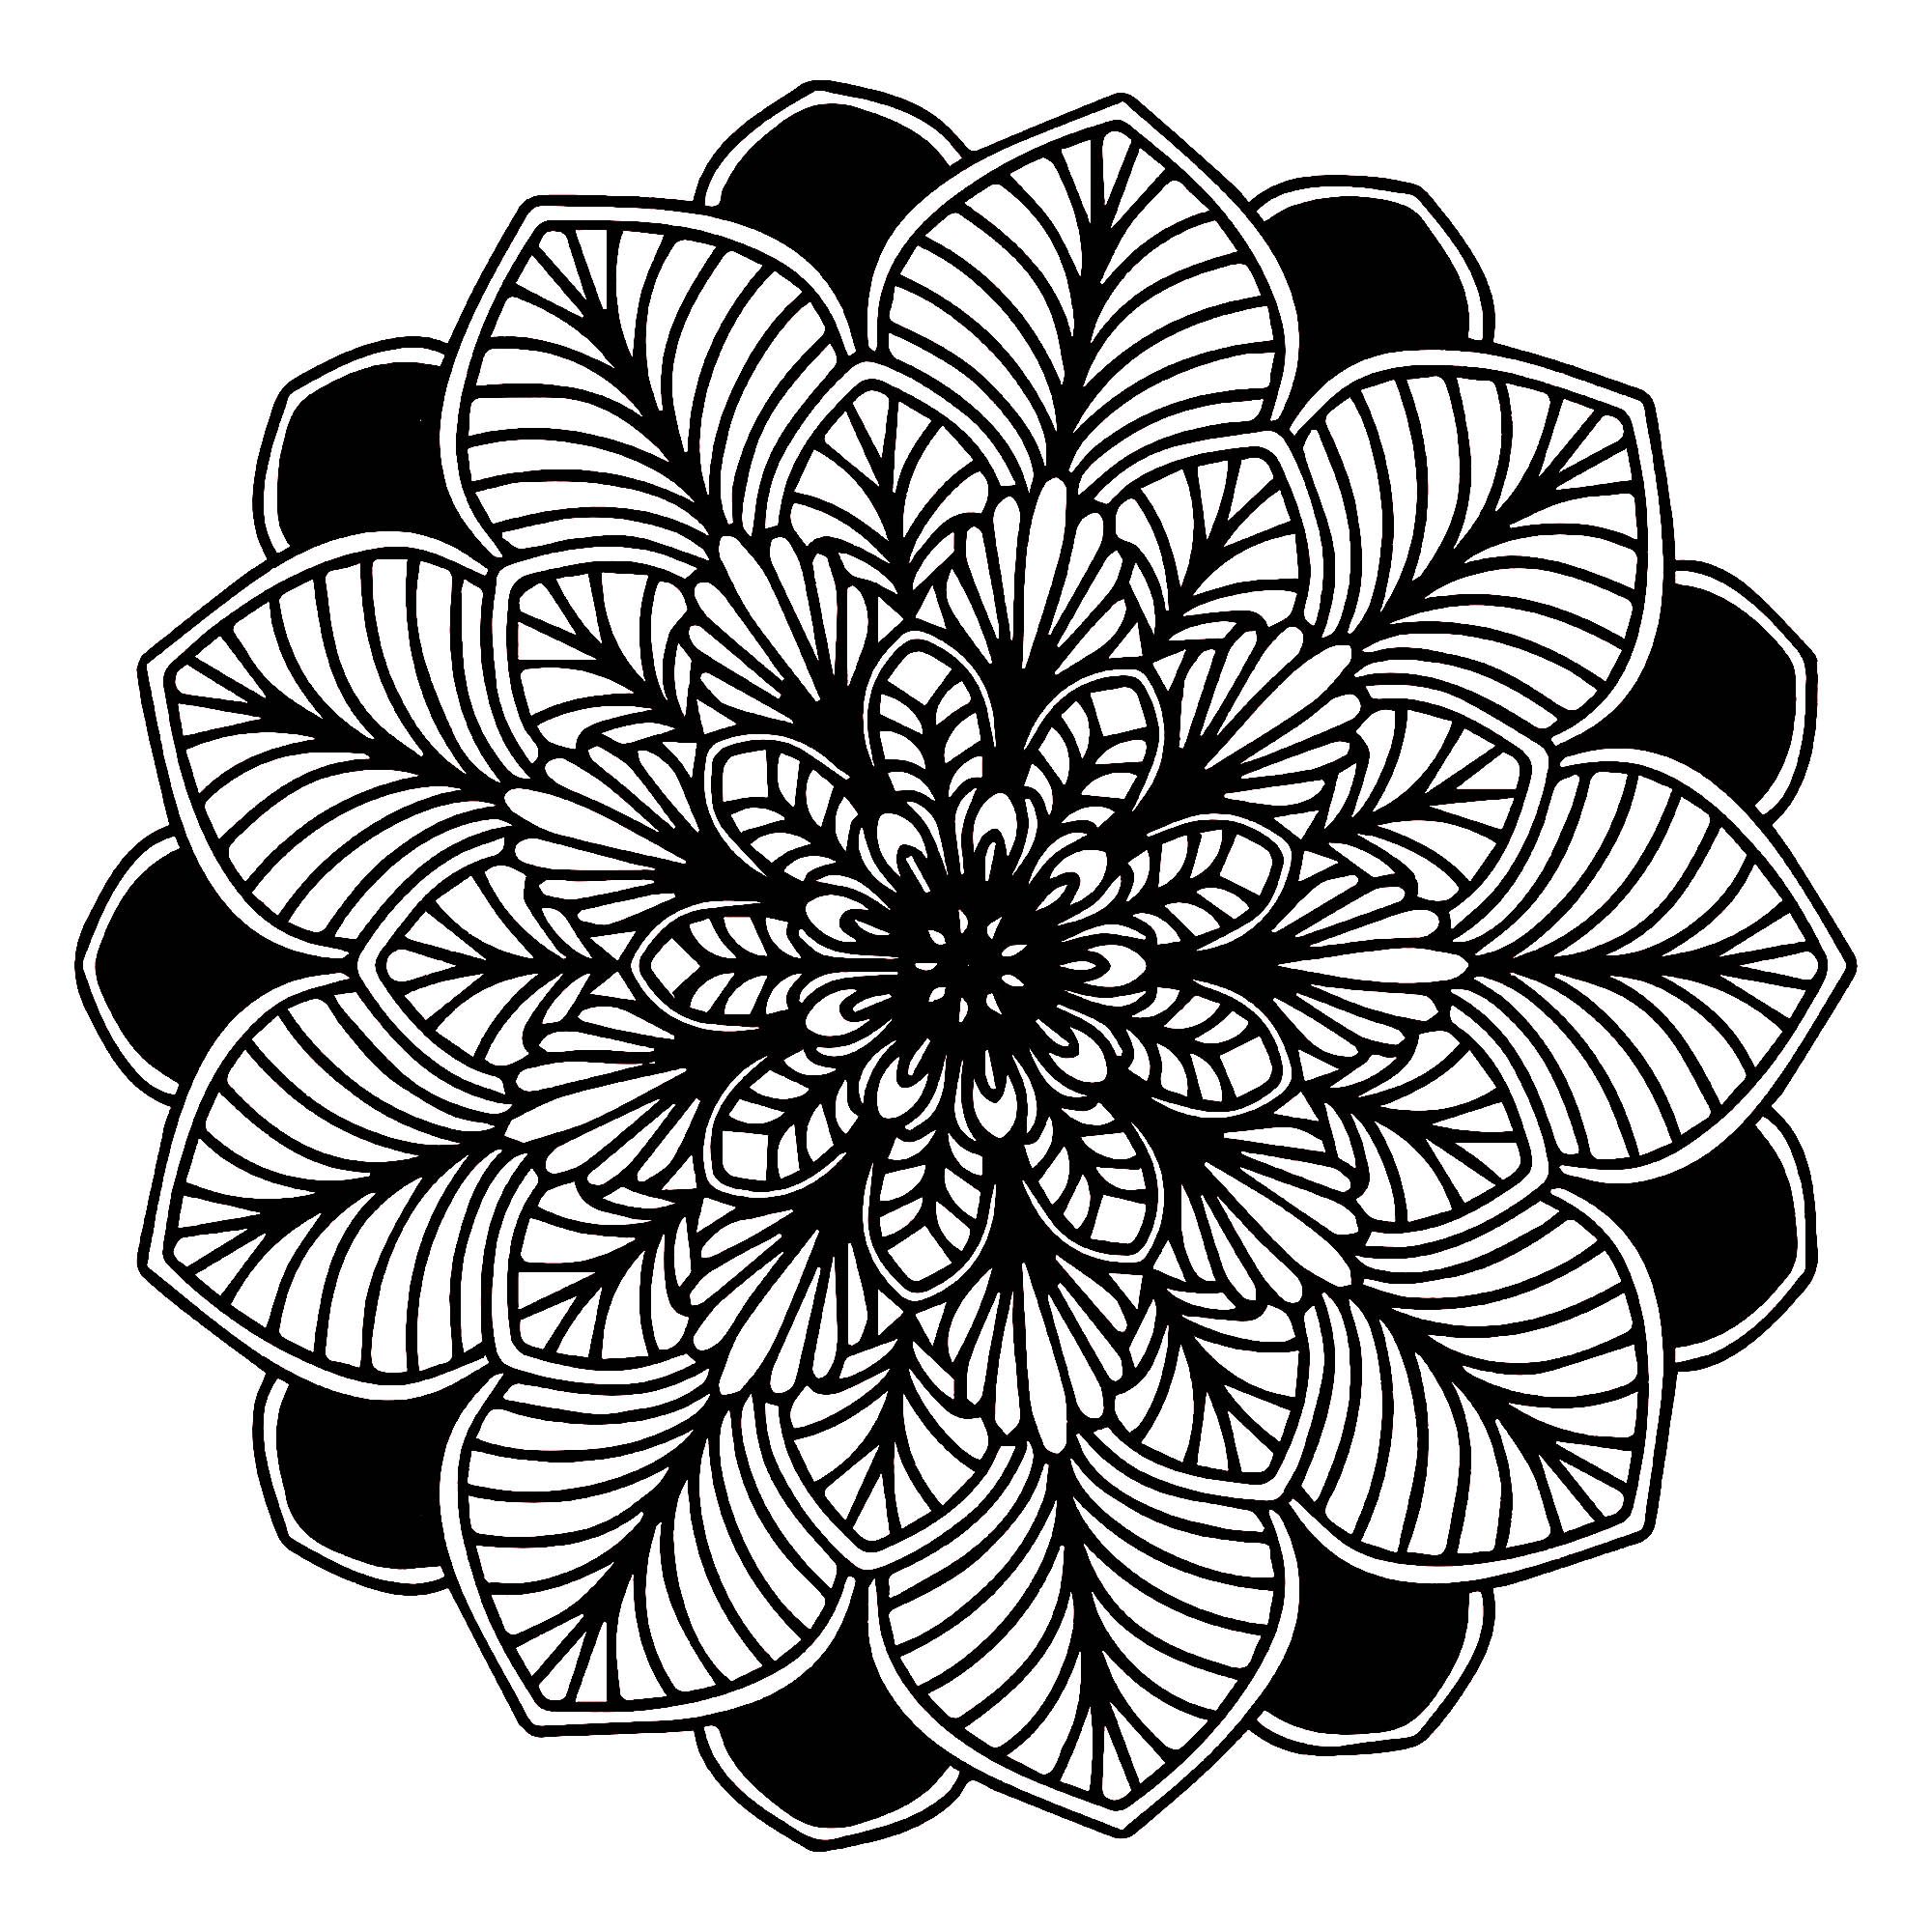 Joli Mandala Noir & blanc composé de feuilles totalement symétriques